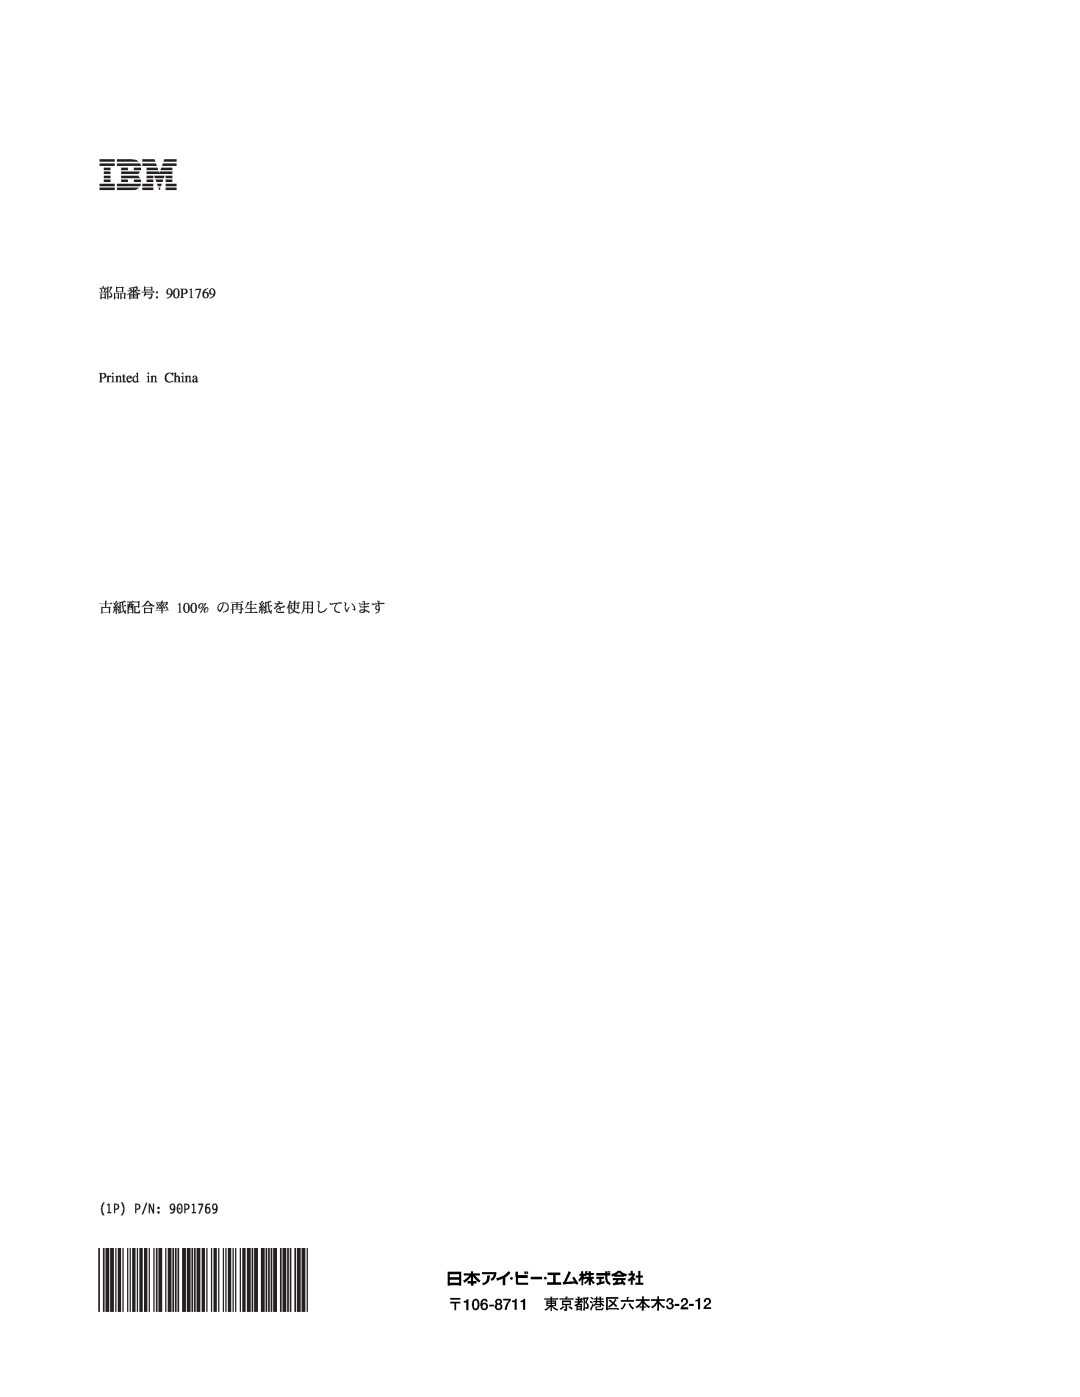 IBM 8649 manual 部品番号 90P1769 Printed in China, 古紙配合率 100% の再生紙を使用しています, 1P P/N 90P1769 